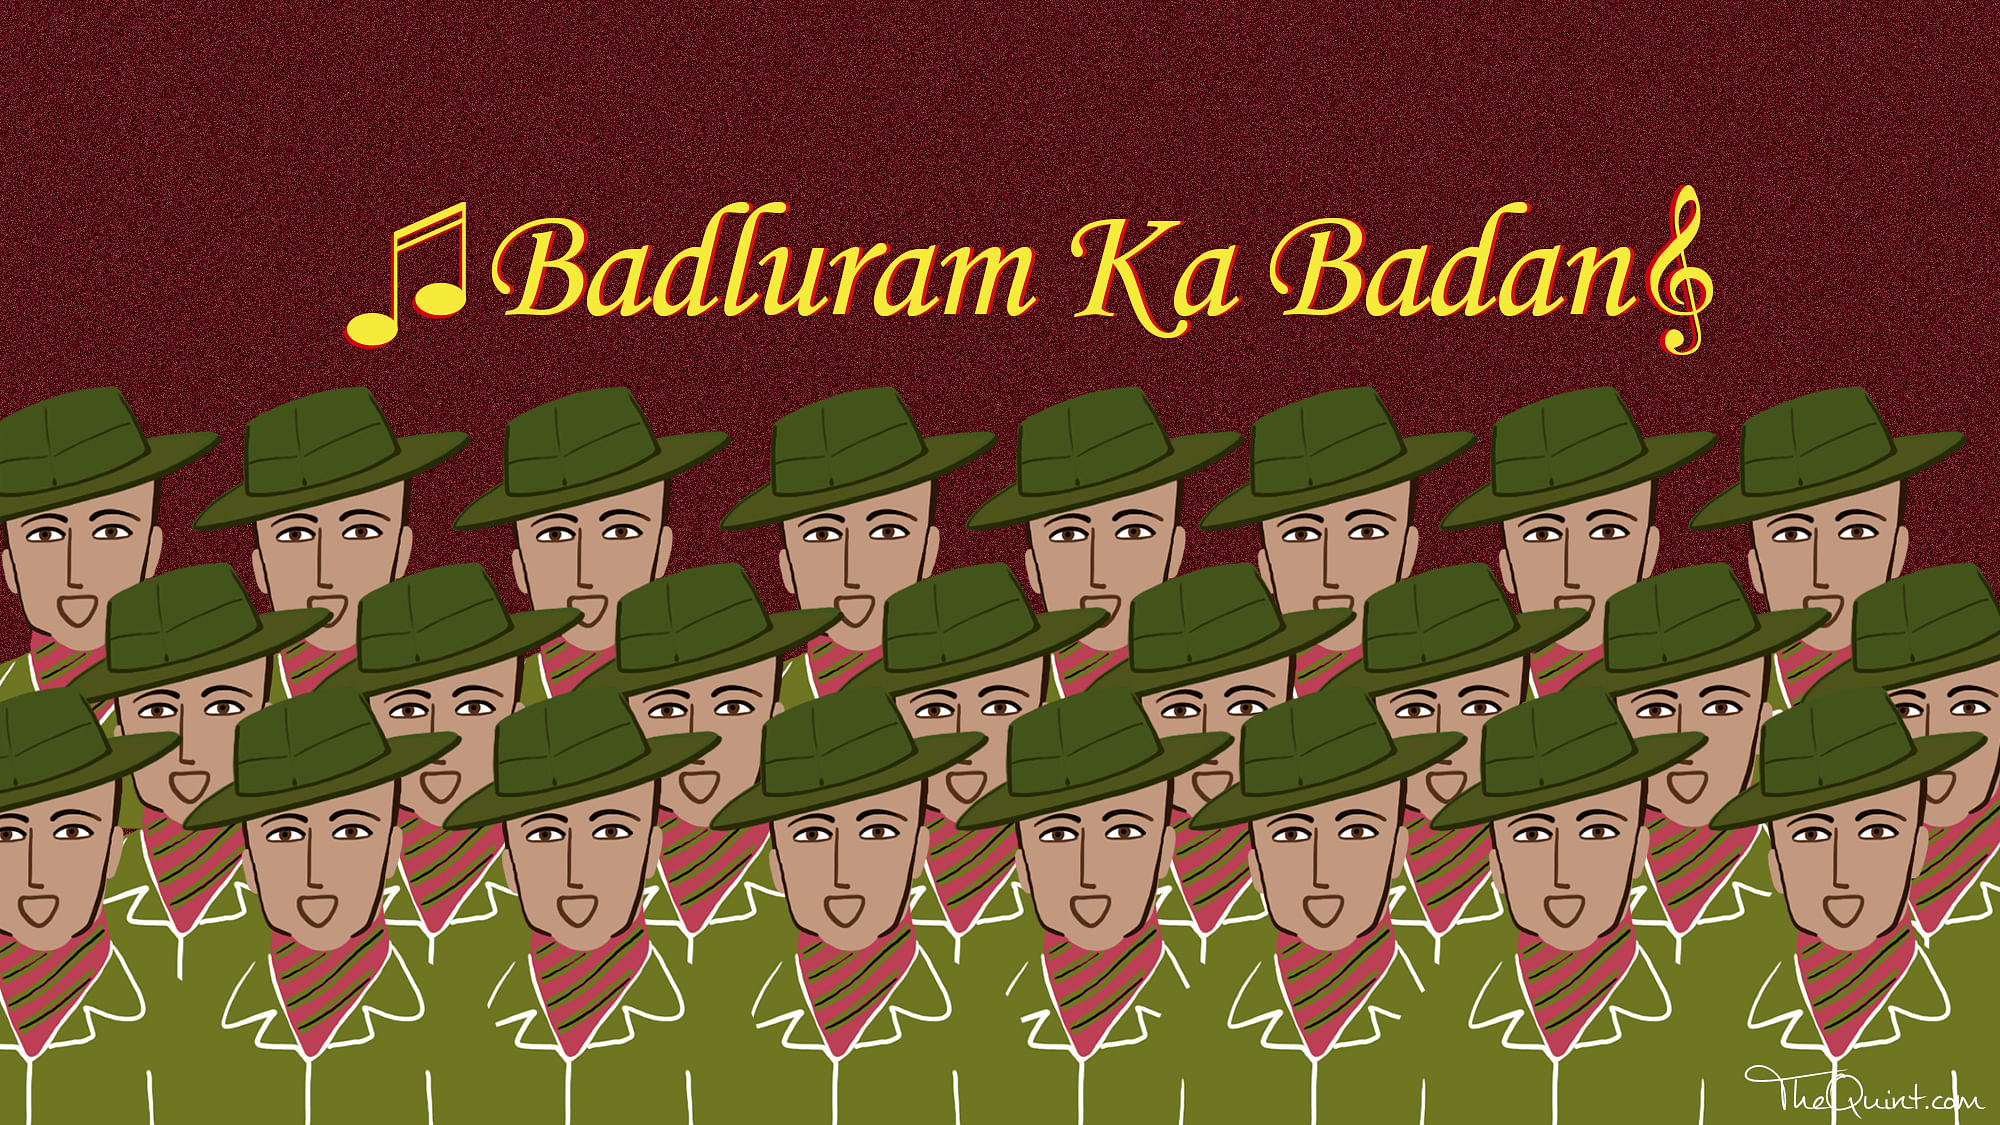 Badluram ka Badan, the regimental march song 